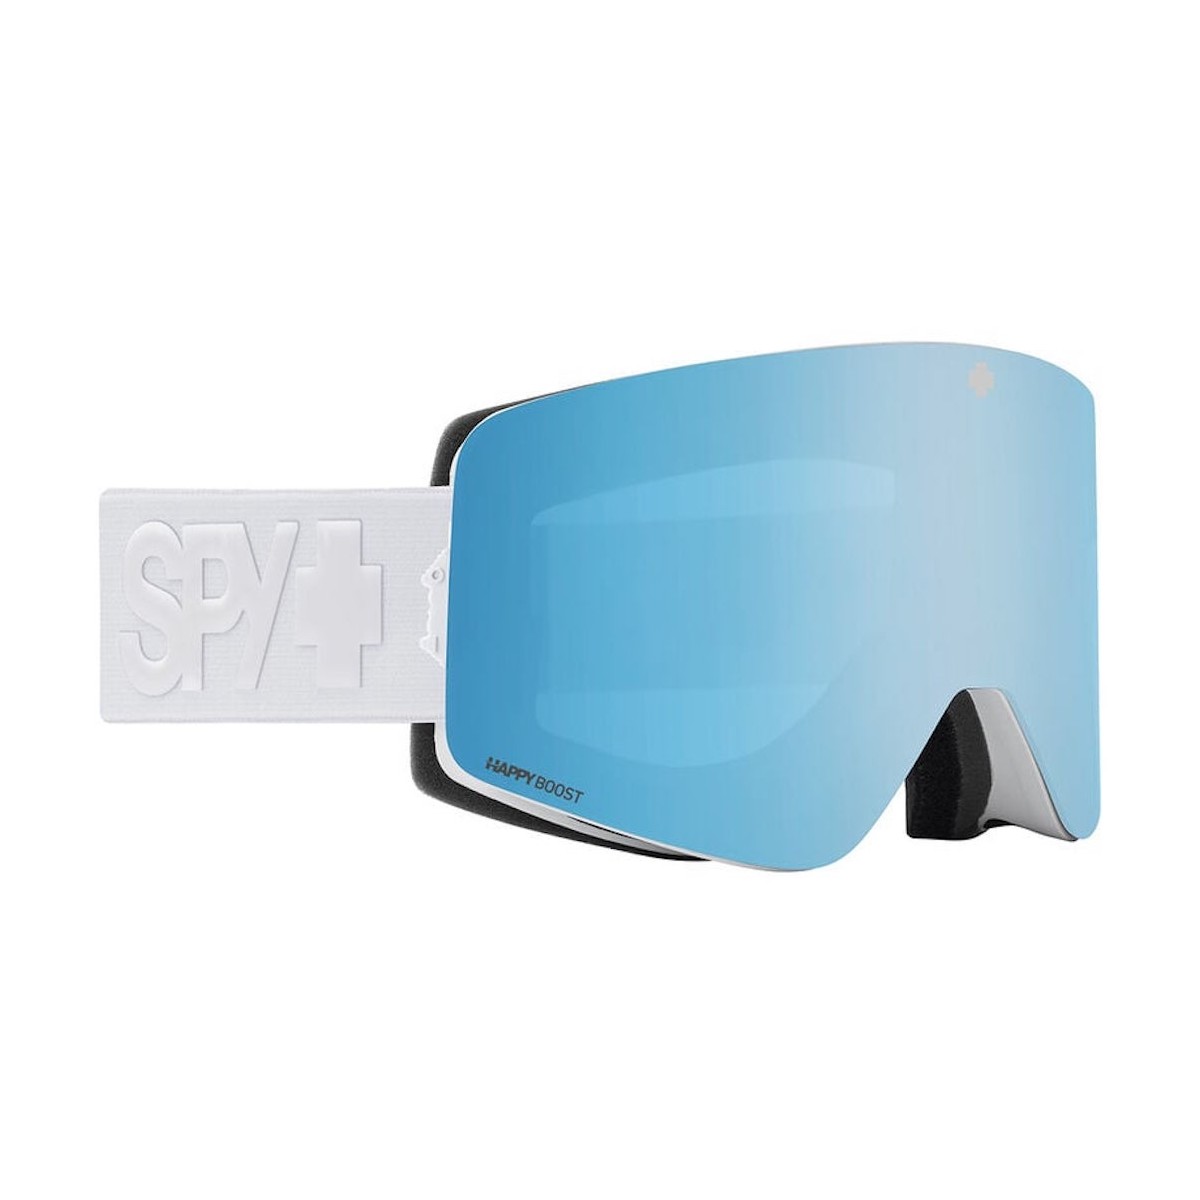 SPY MARAUDER SNOW goggles - matte white